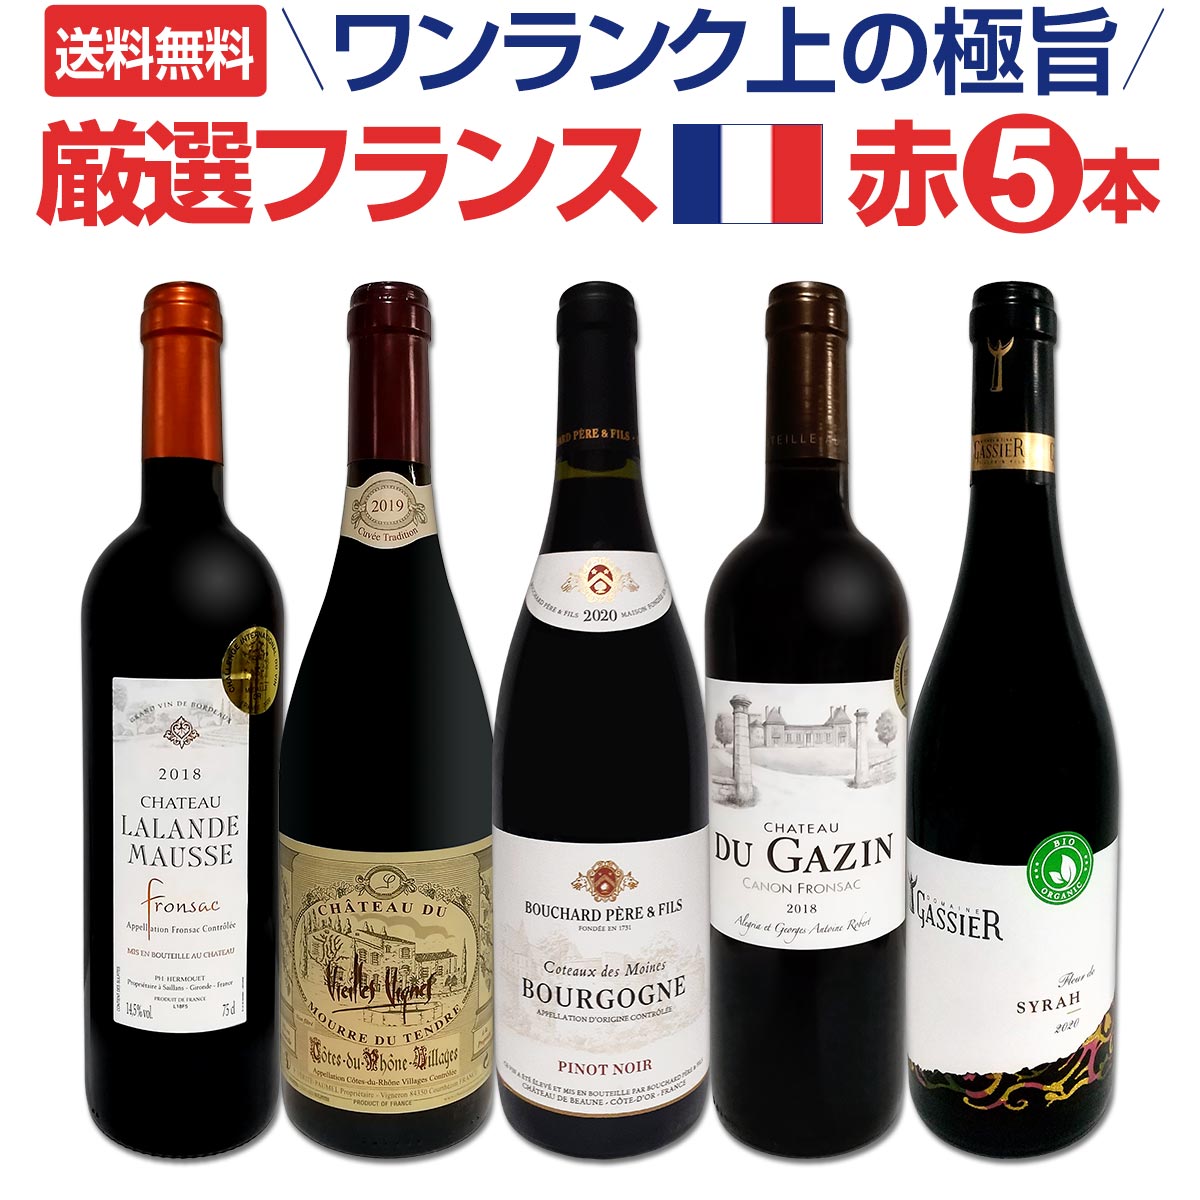 【送料無料】ワンランク上の厳選極旨フランス赤ワイン5本セット!!